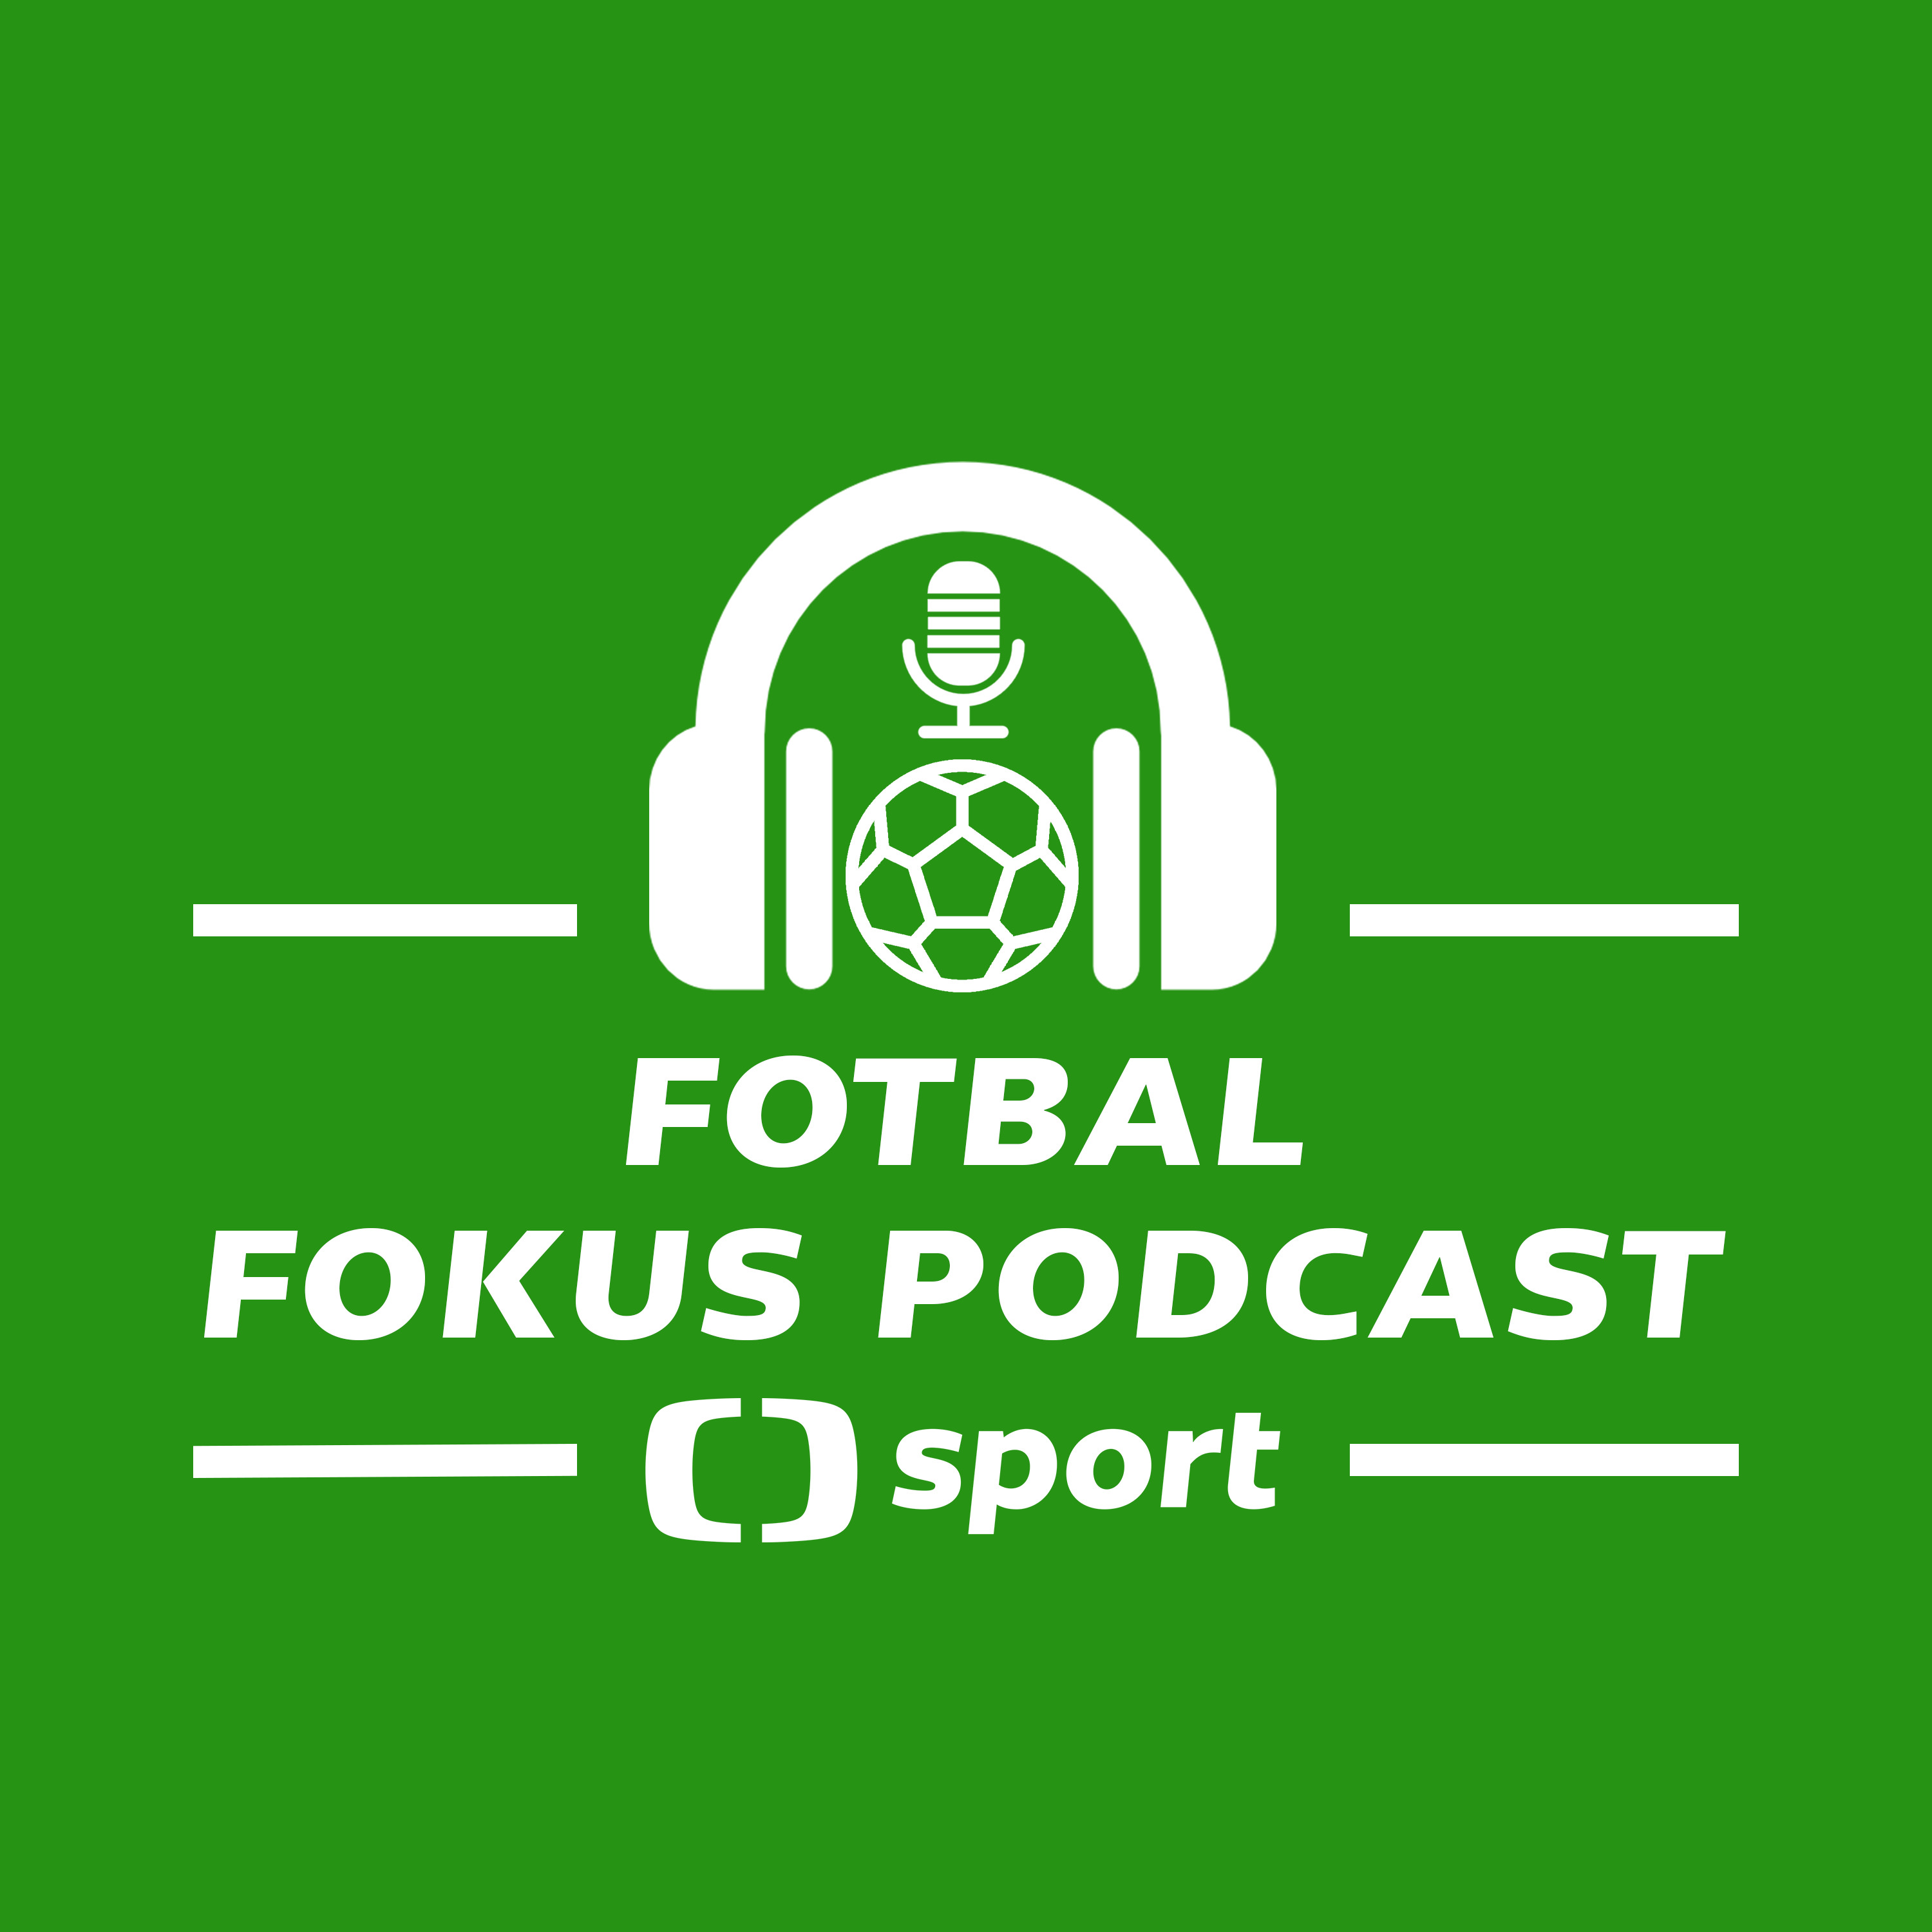 Fotbal fokus podcast: Je Gomez pro Spartu flop? Čvančara out, pak zas in. Zapálil Barák ohně?